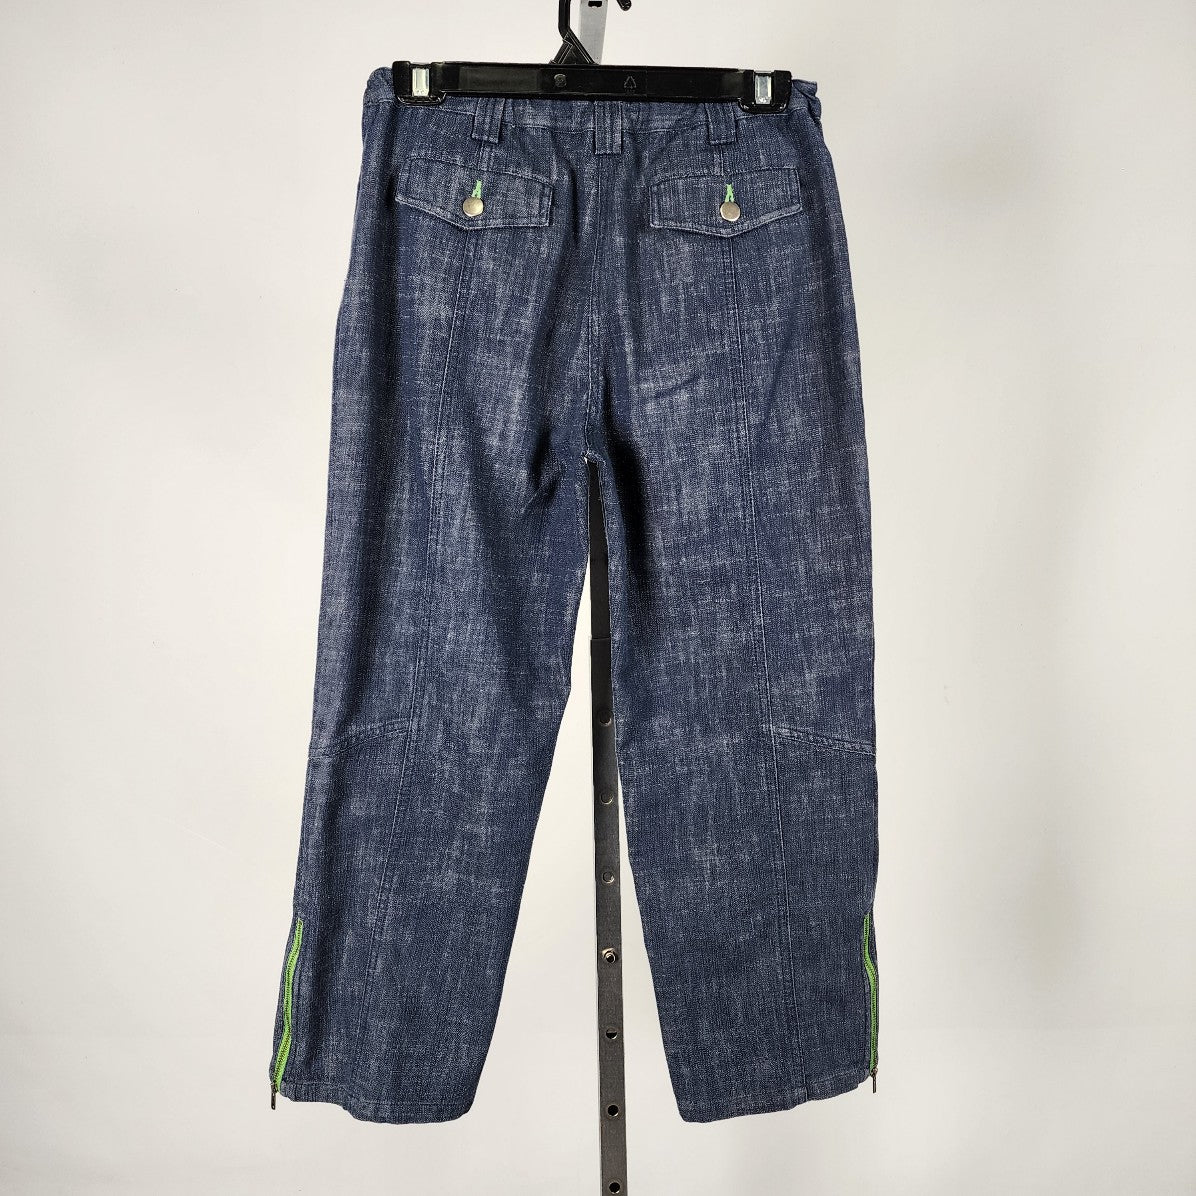 Eric Alexandre Blue Cotton Capri Pants Size 8